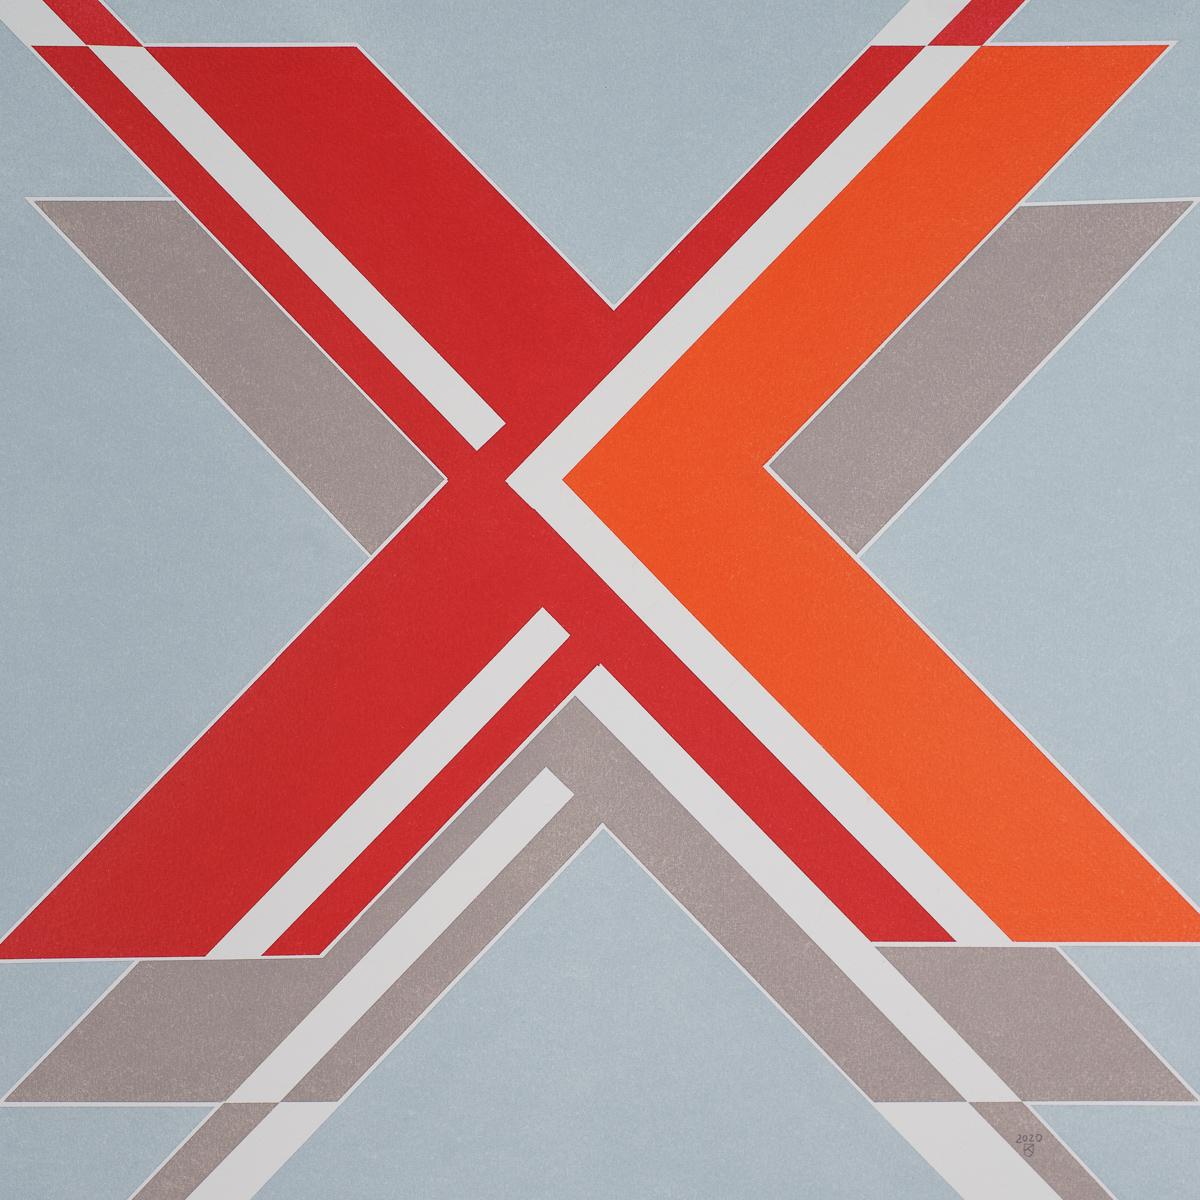  X  from The Message Series - Peinture abstraite contemporaine à l'huile au pastel, encadrée